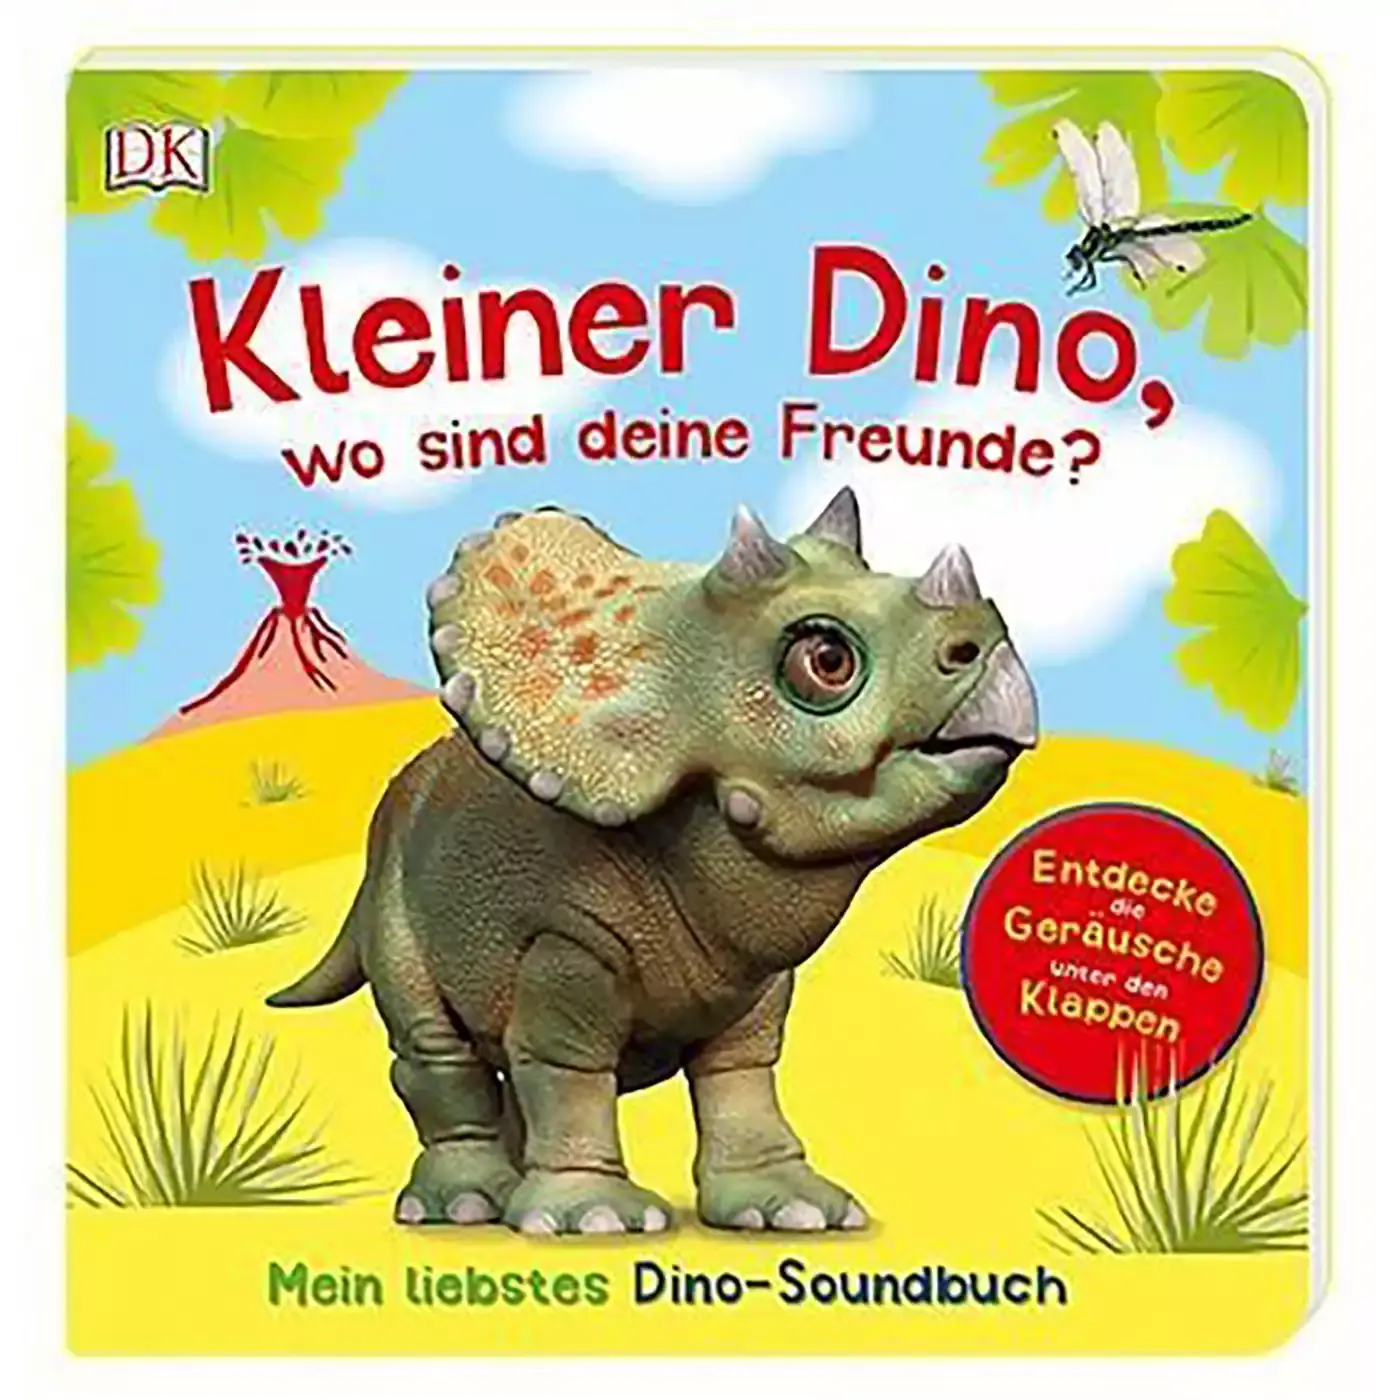 Kleiner Dino, wo sind deine Freunde? DK 2000577520602 1